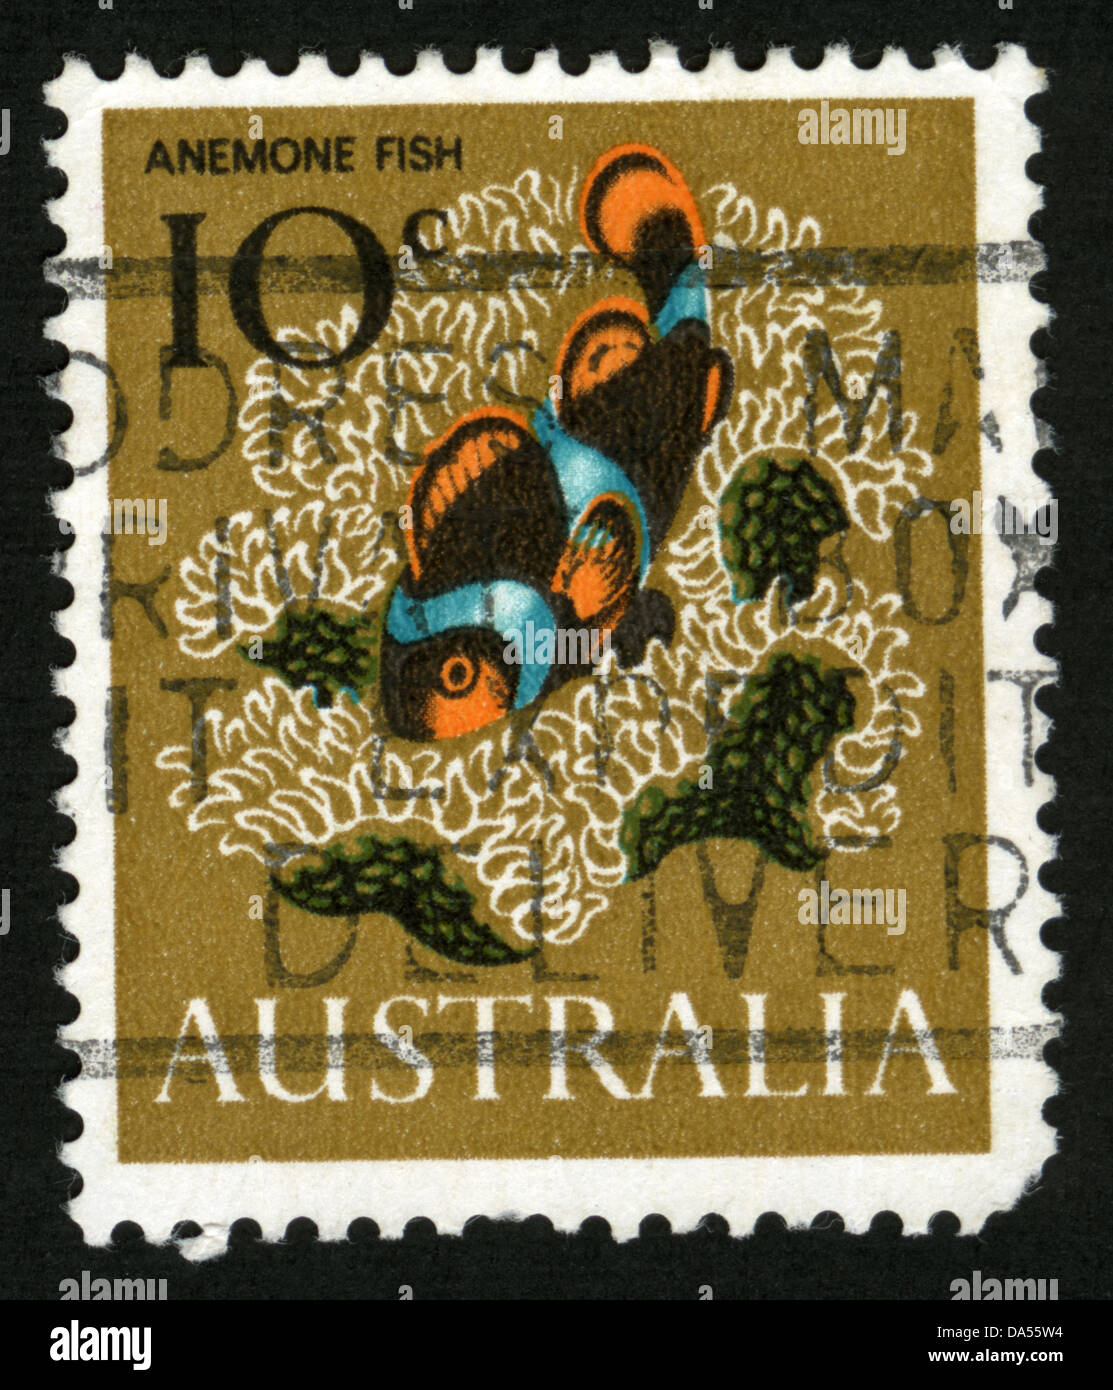 L'Australie, l'Ornithorynque,mark post stamp,Animaux,Animaux,illustrations,Australie,la faune, la flore , des timbres, poissons Banque D'Images